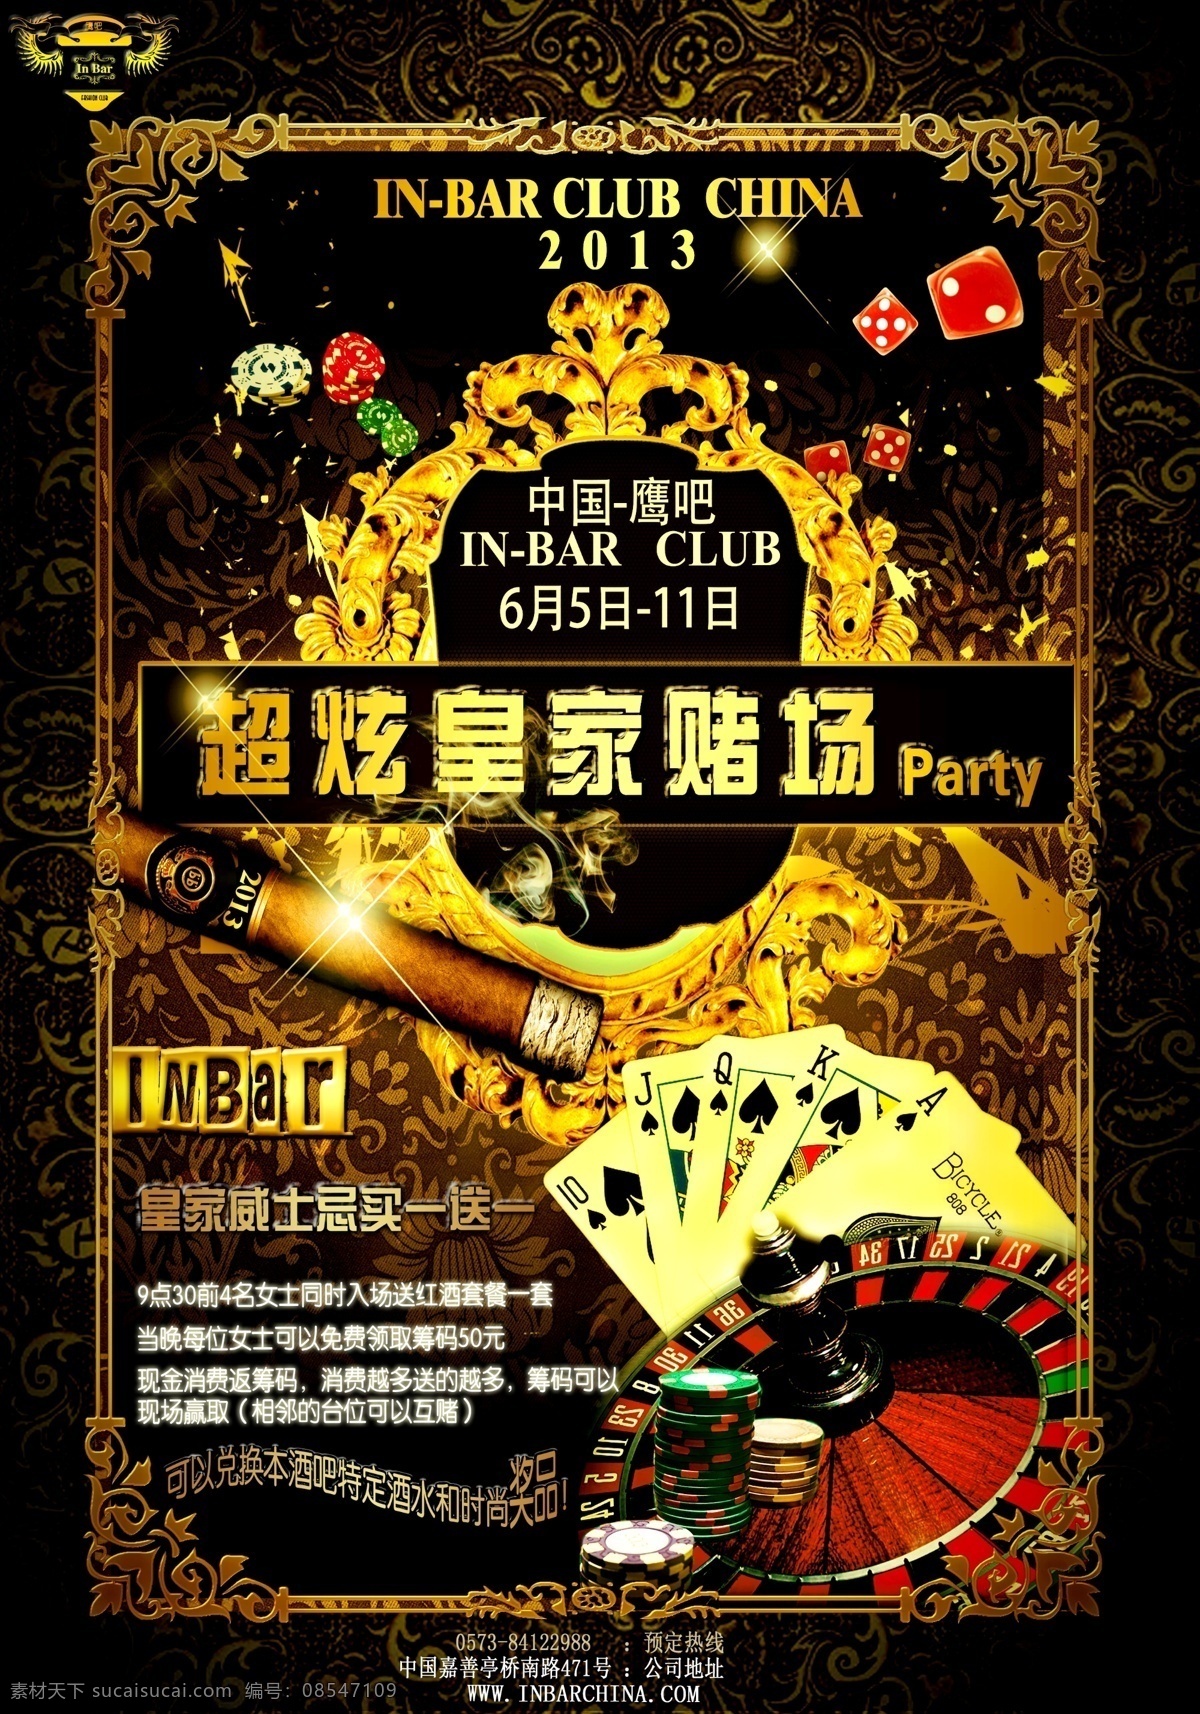 酒吧 超炫皇家赌场 海报 皇家 赌场 派对 策划 广告设计模板 源文件